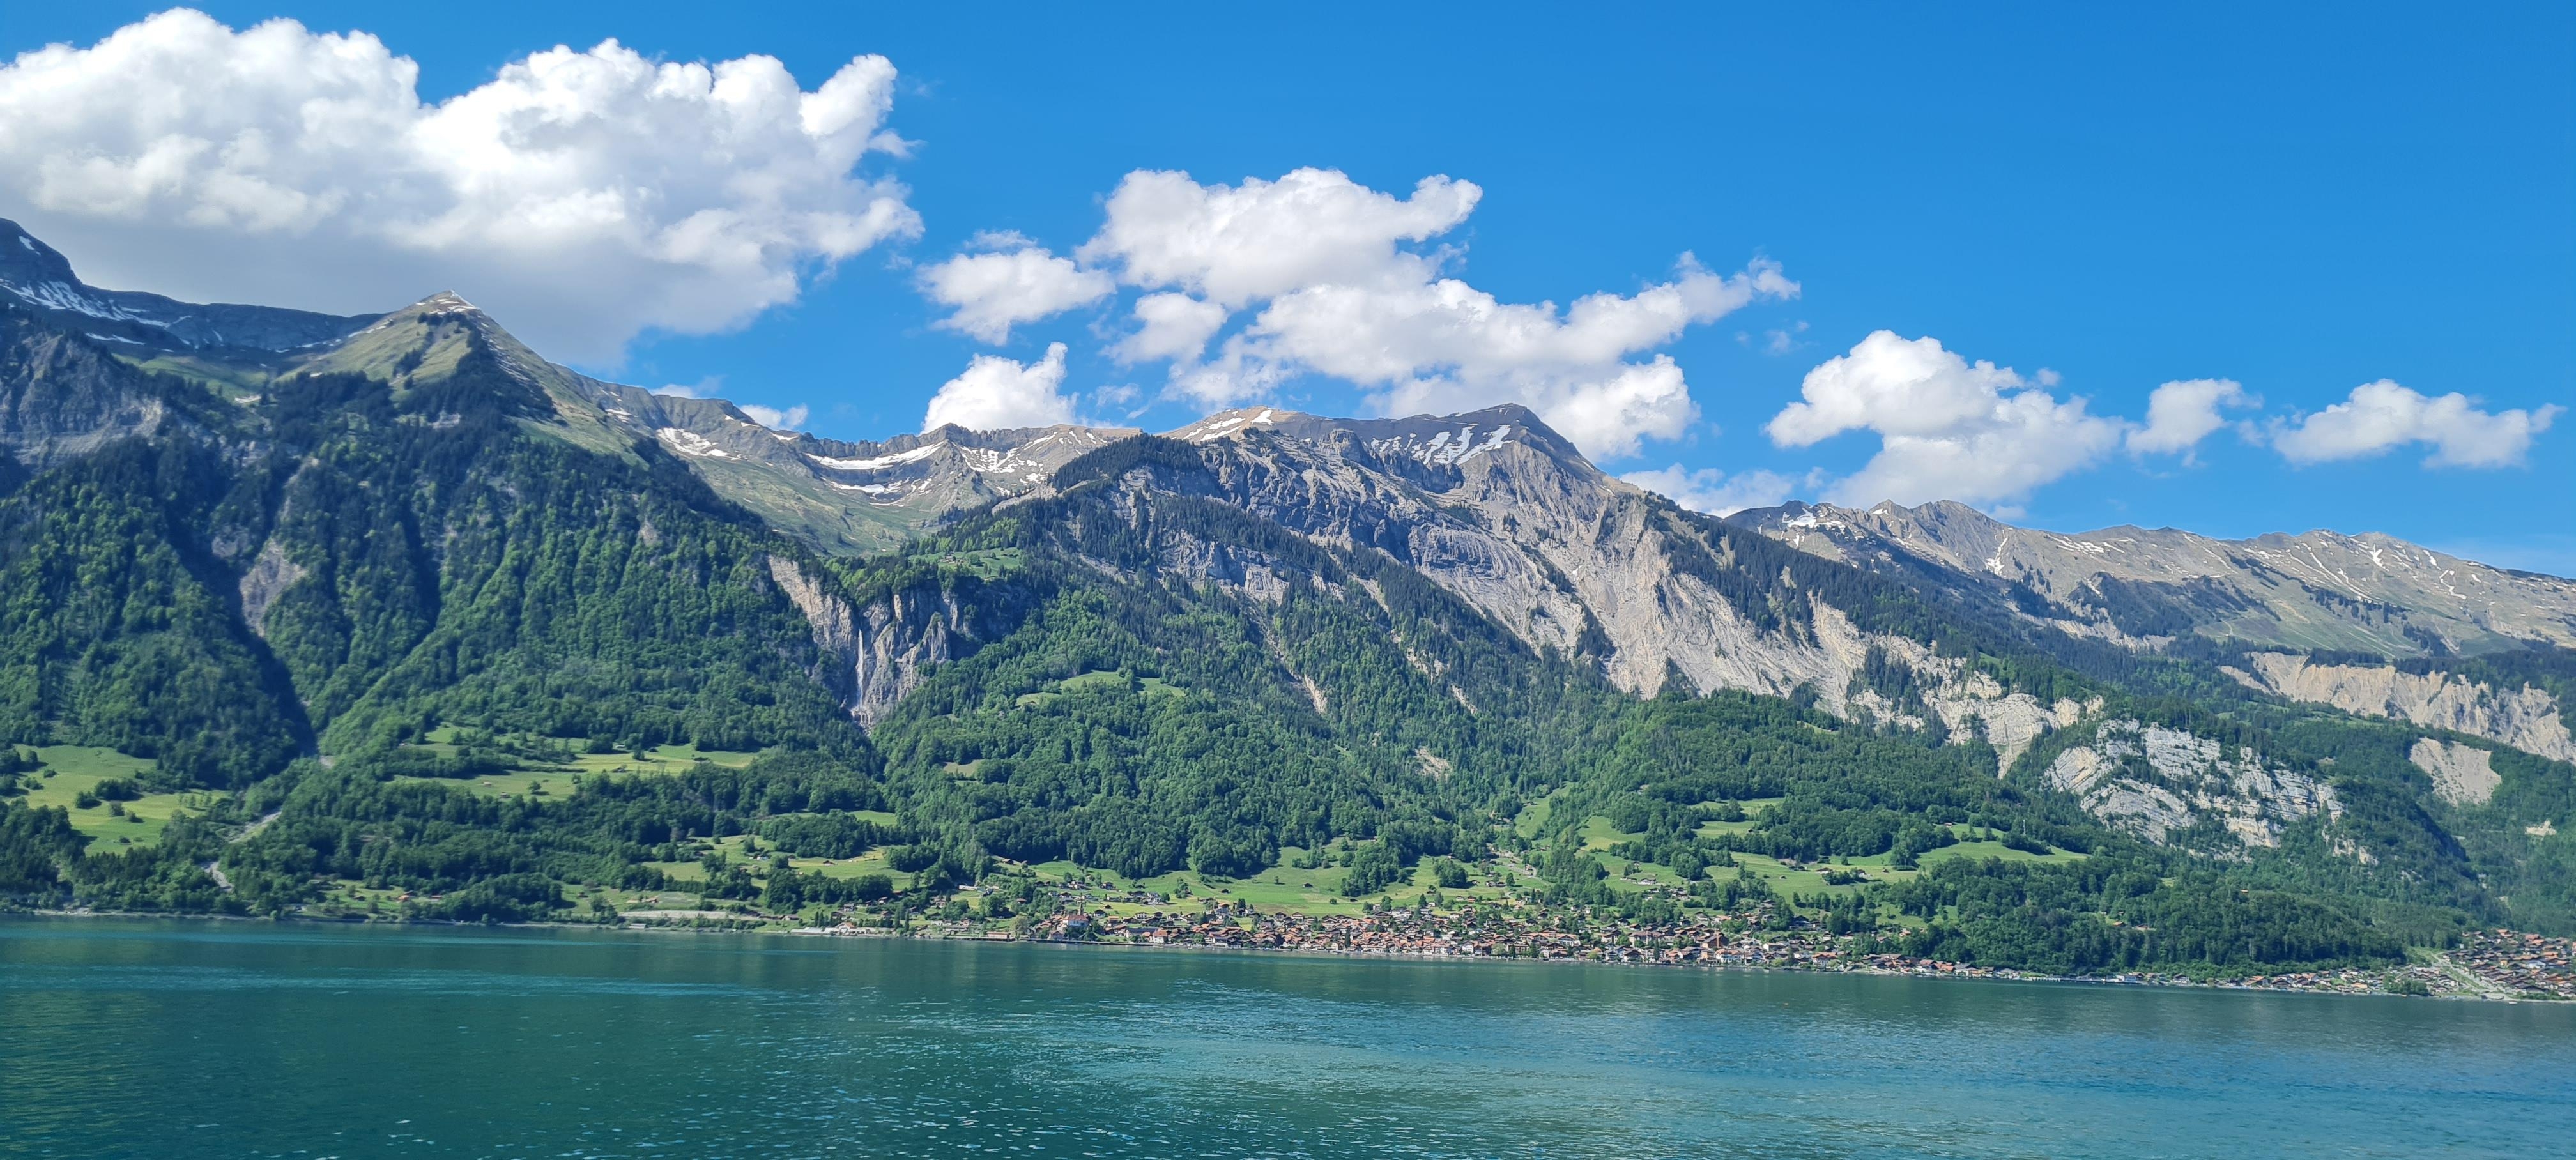 Bergkulisse 

#reisenmachtfroh #schweiz #berge #see